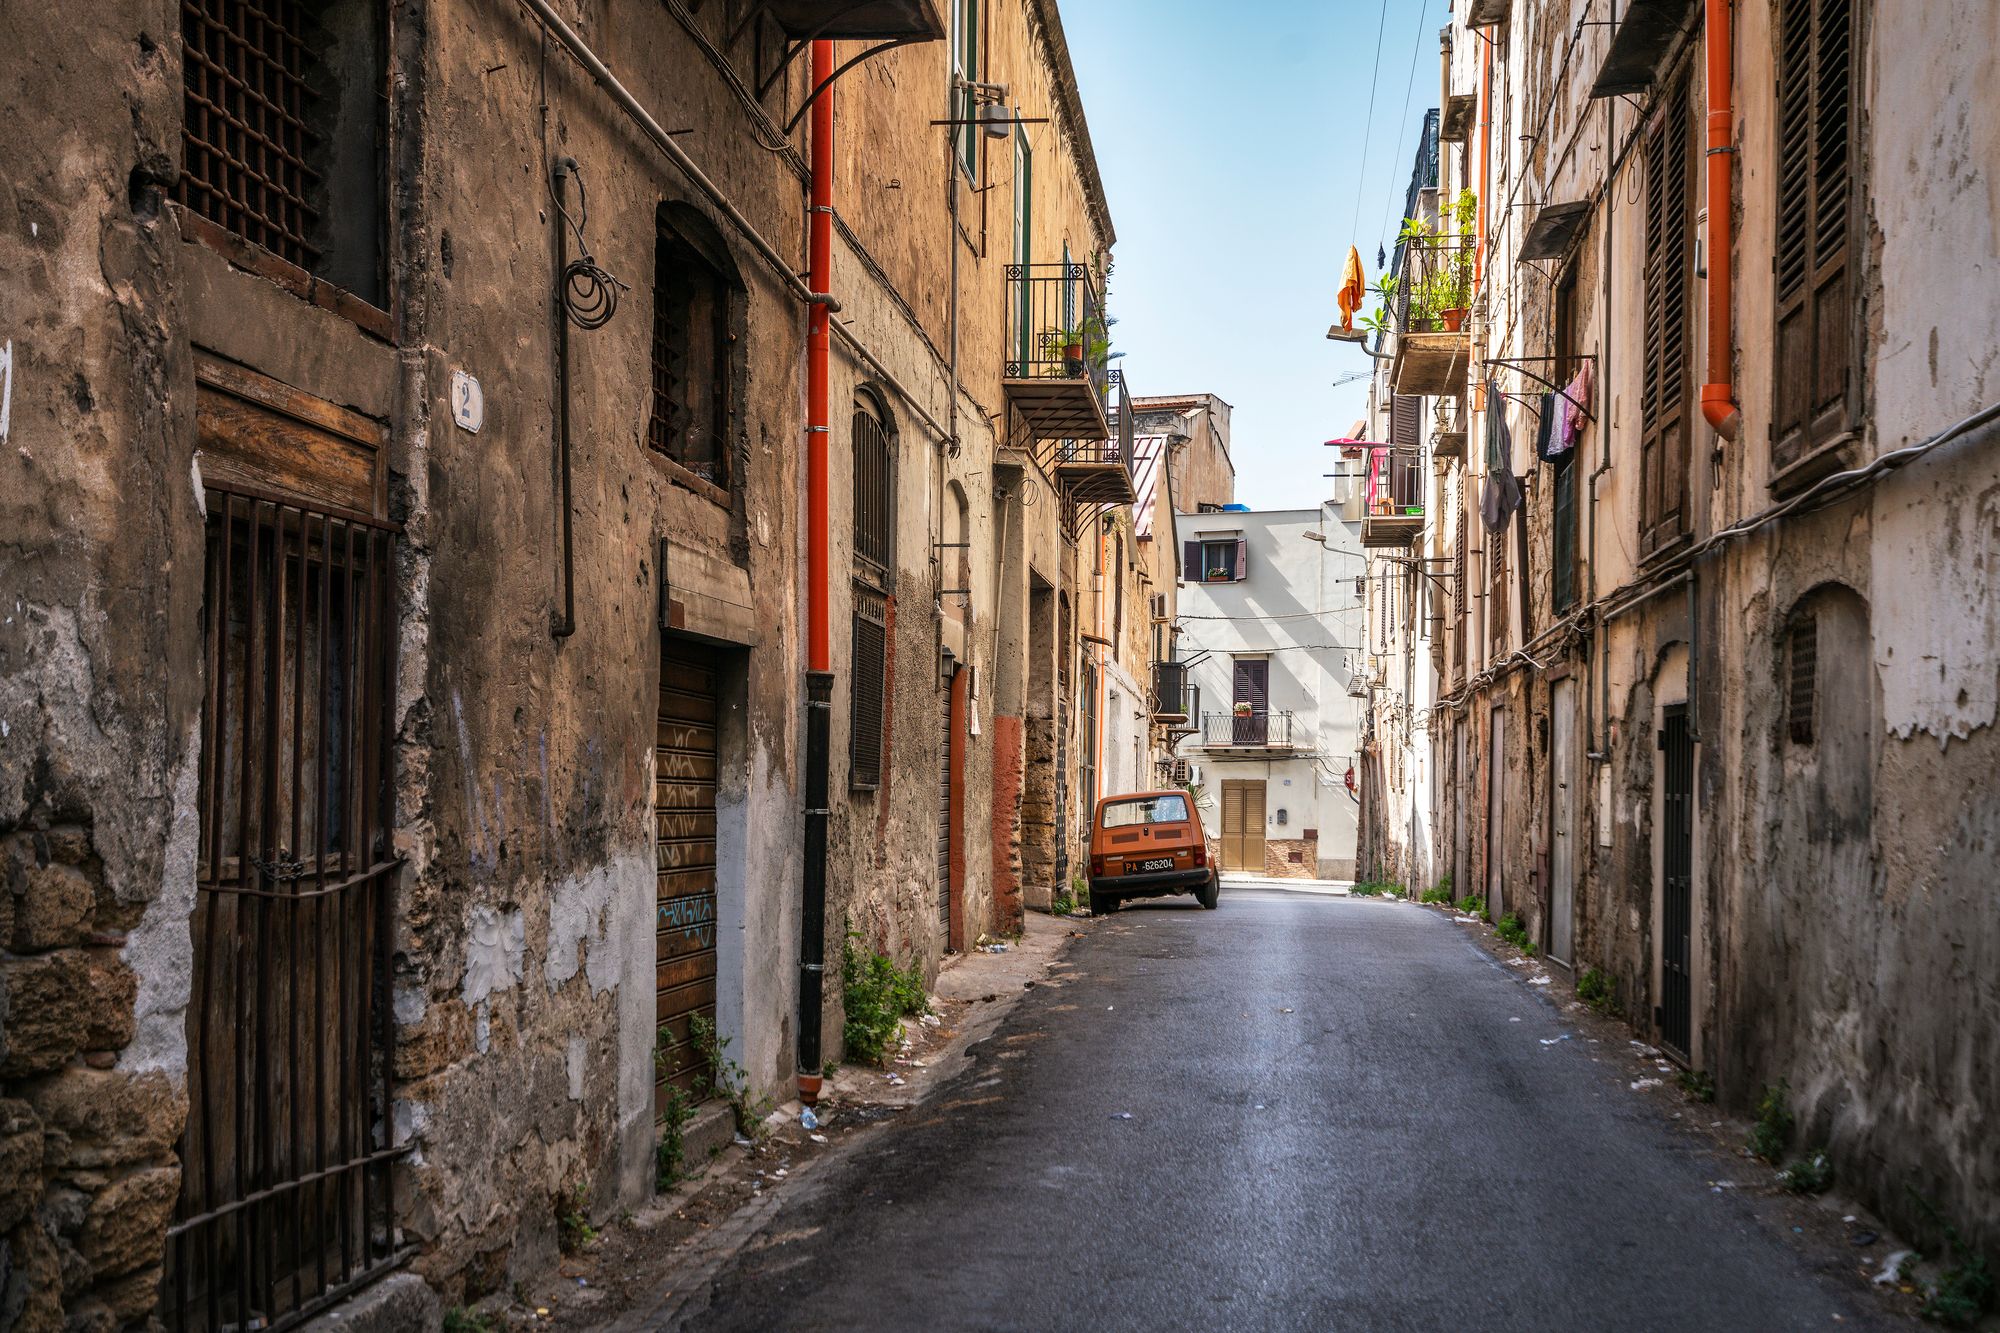 1980-luvulla Sisilian mafiasodan taisteluita käytiin Palermossa. Nykyään kadut ovat rauhoittuneet. © iStock